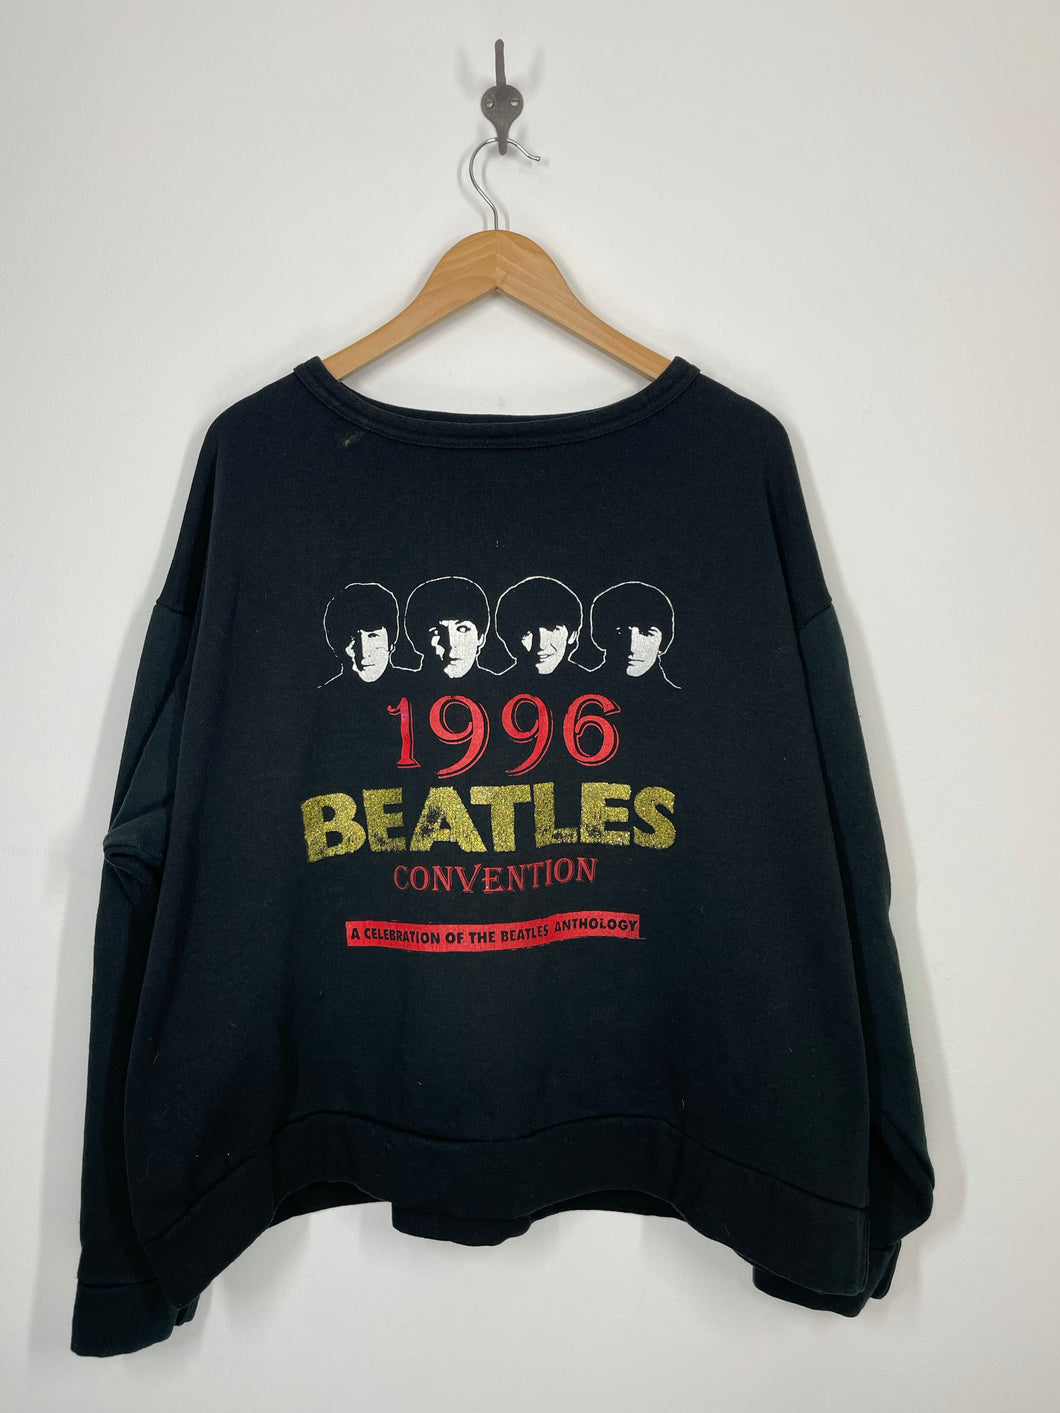 Beatles Bash 1996 Convention Anthology Celebration Sweatshirt - IZZIES - XL